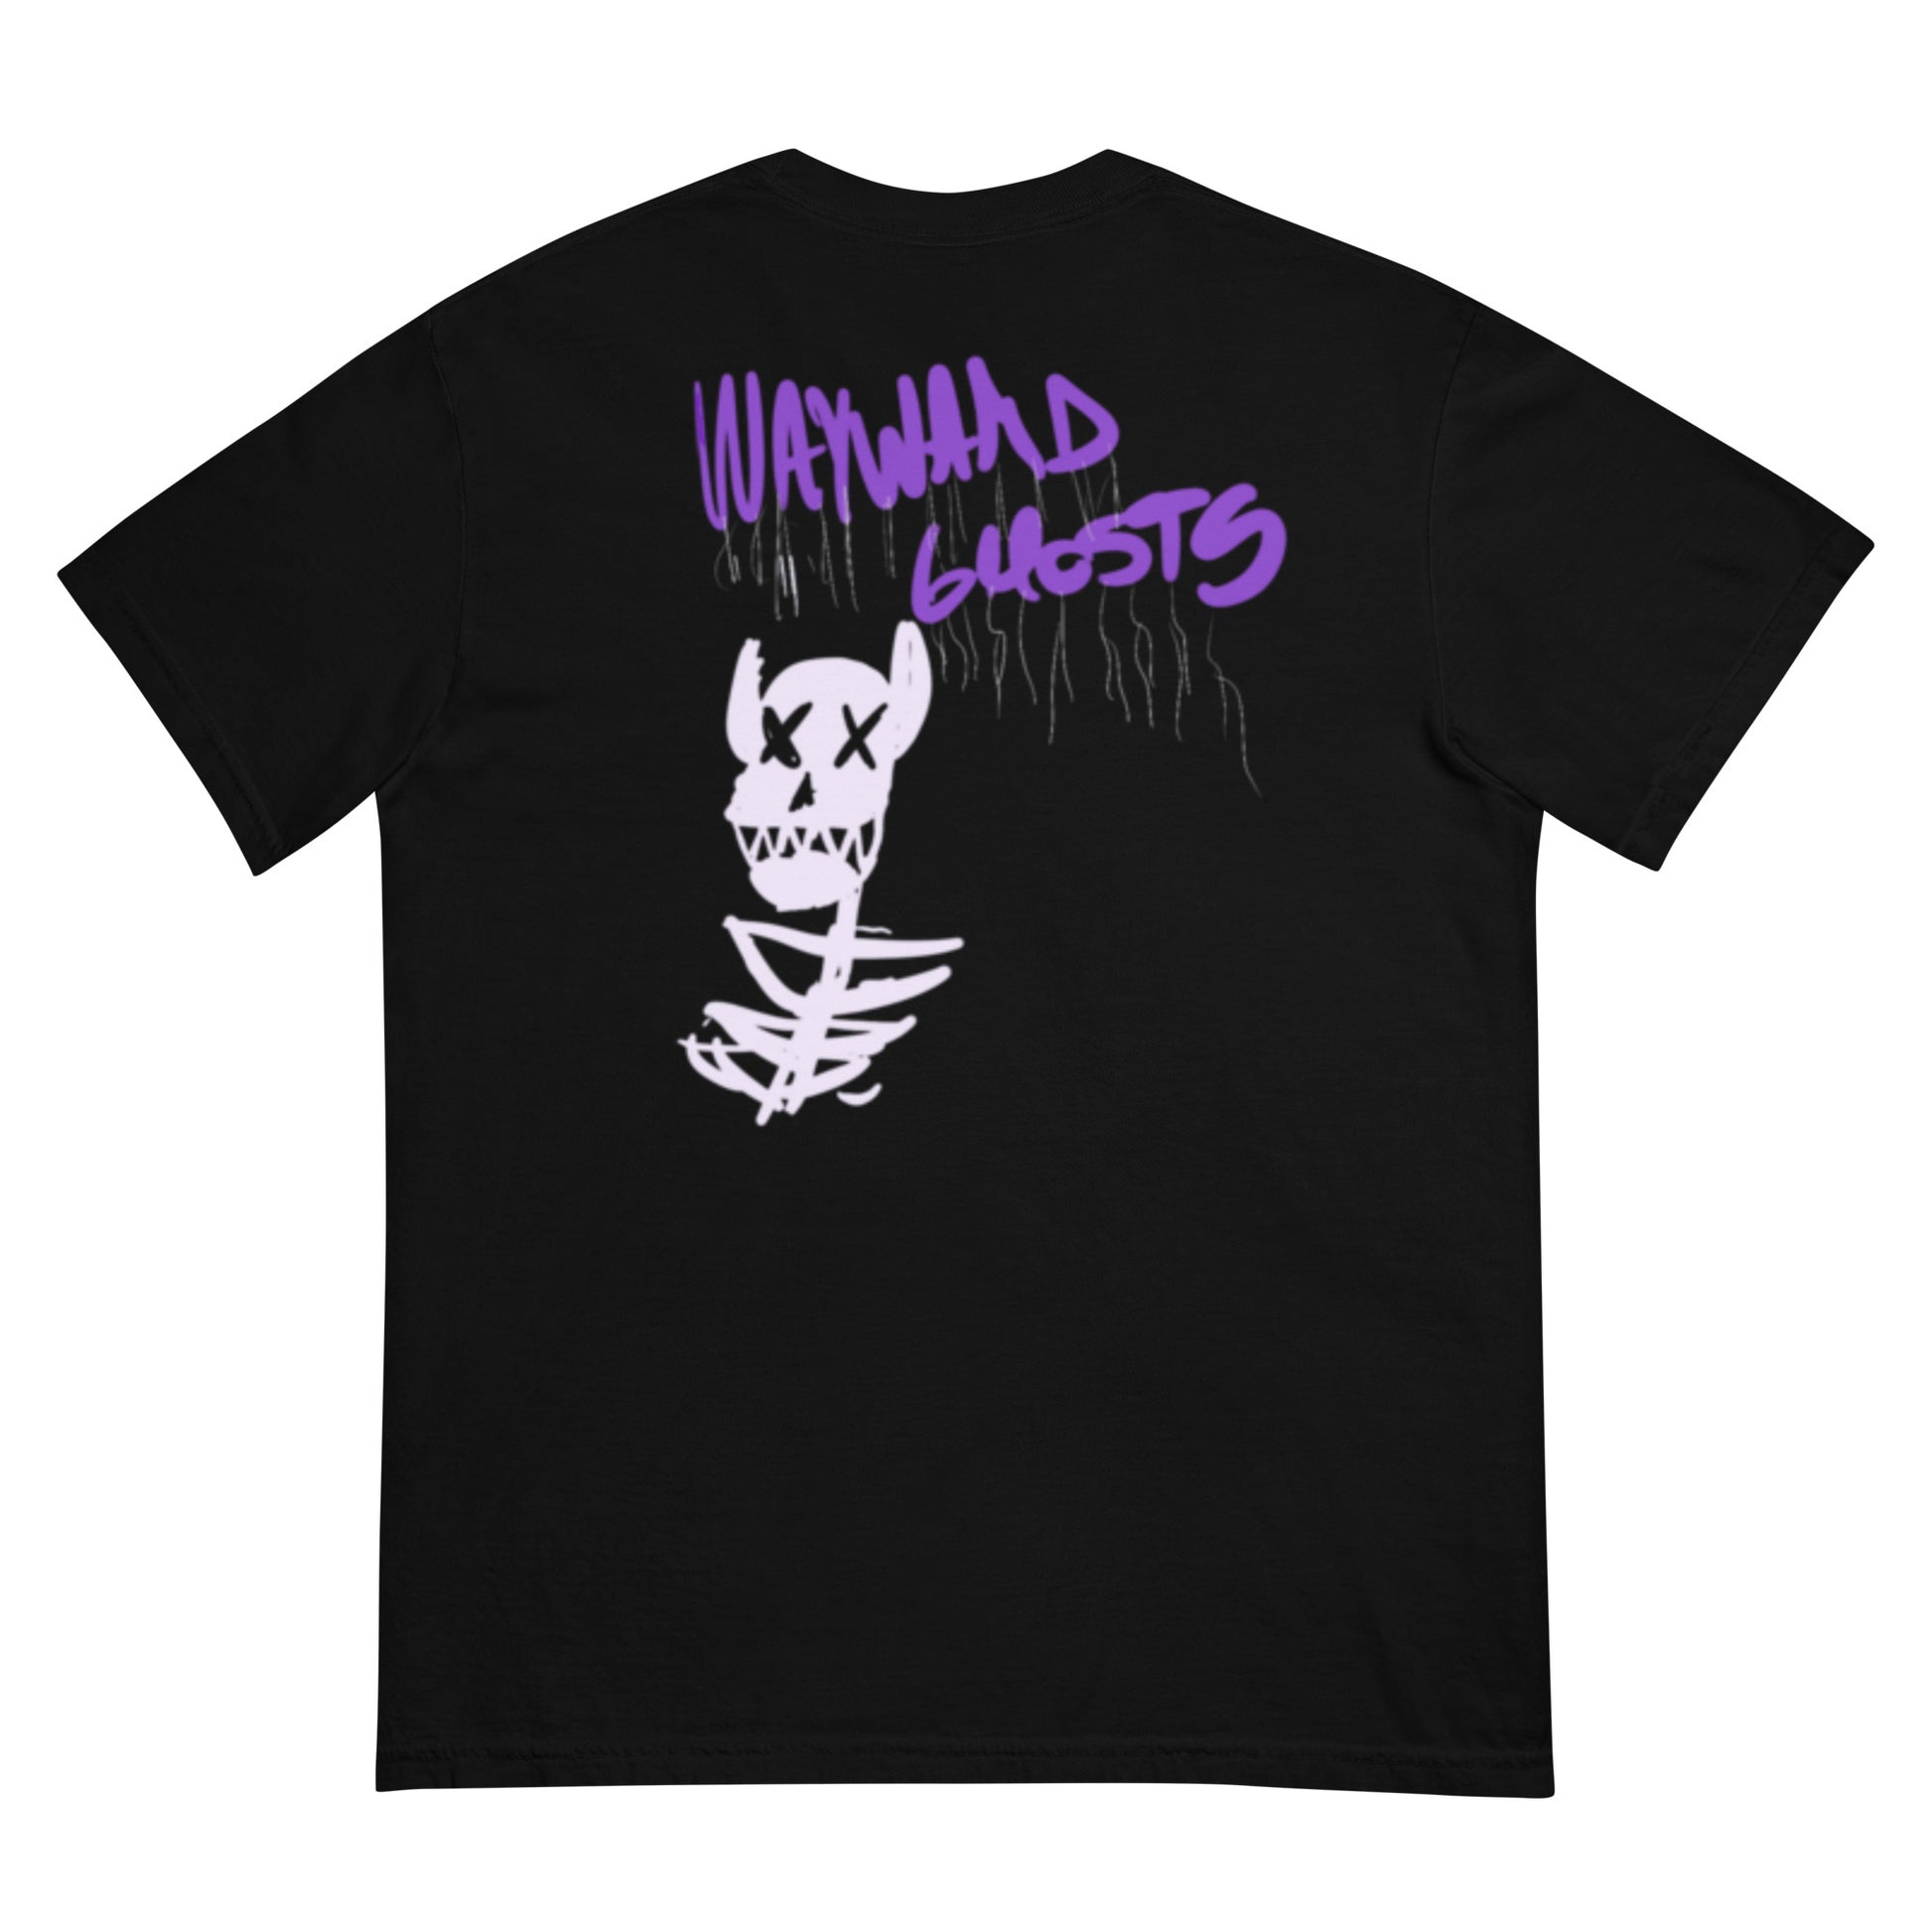 Wayward Ghosts "5280" heavyweight t-shirt Wayward Ghosts